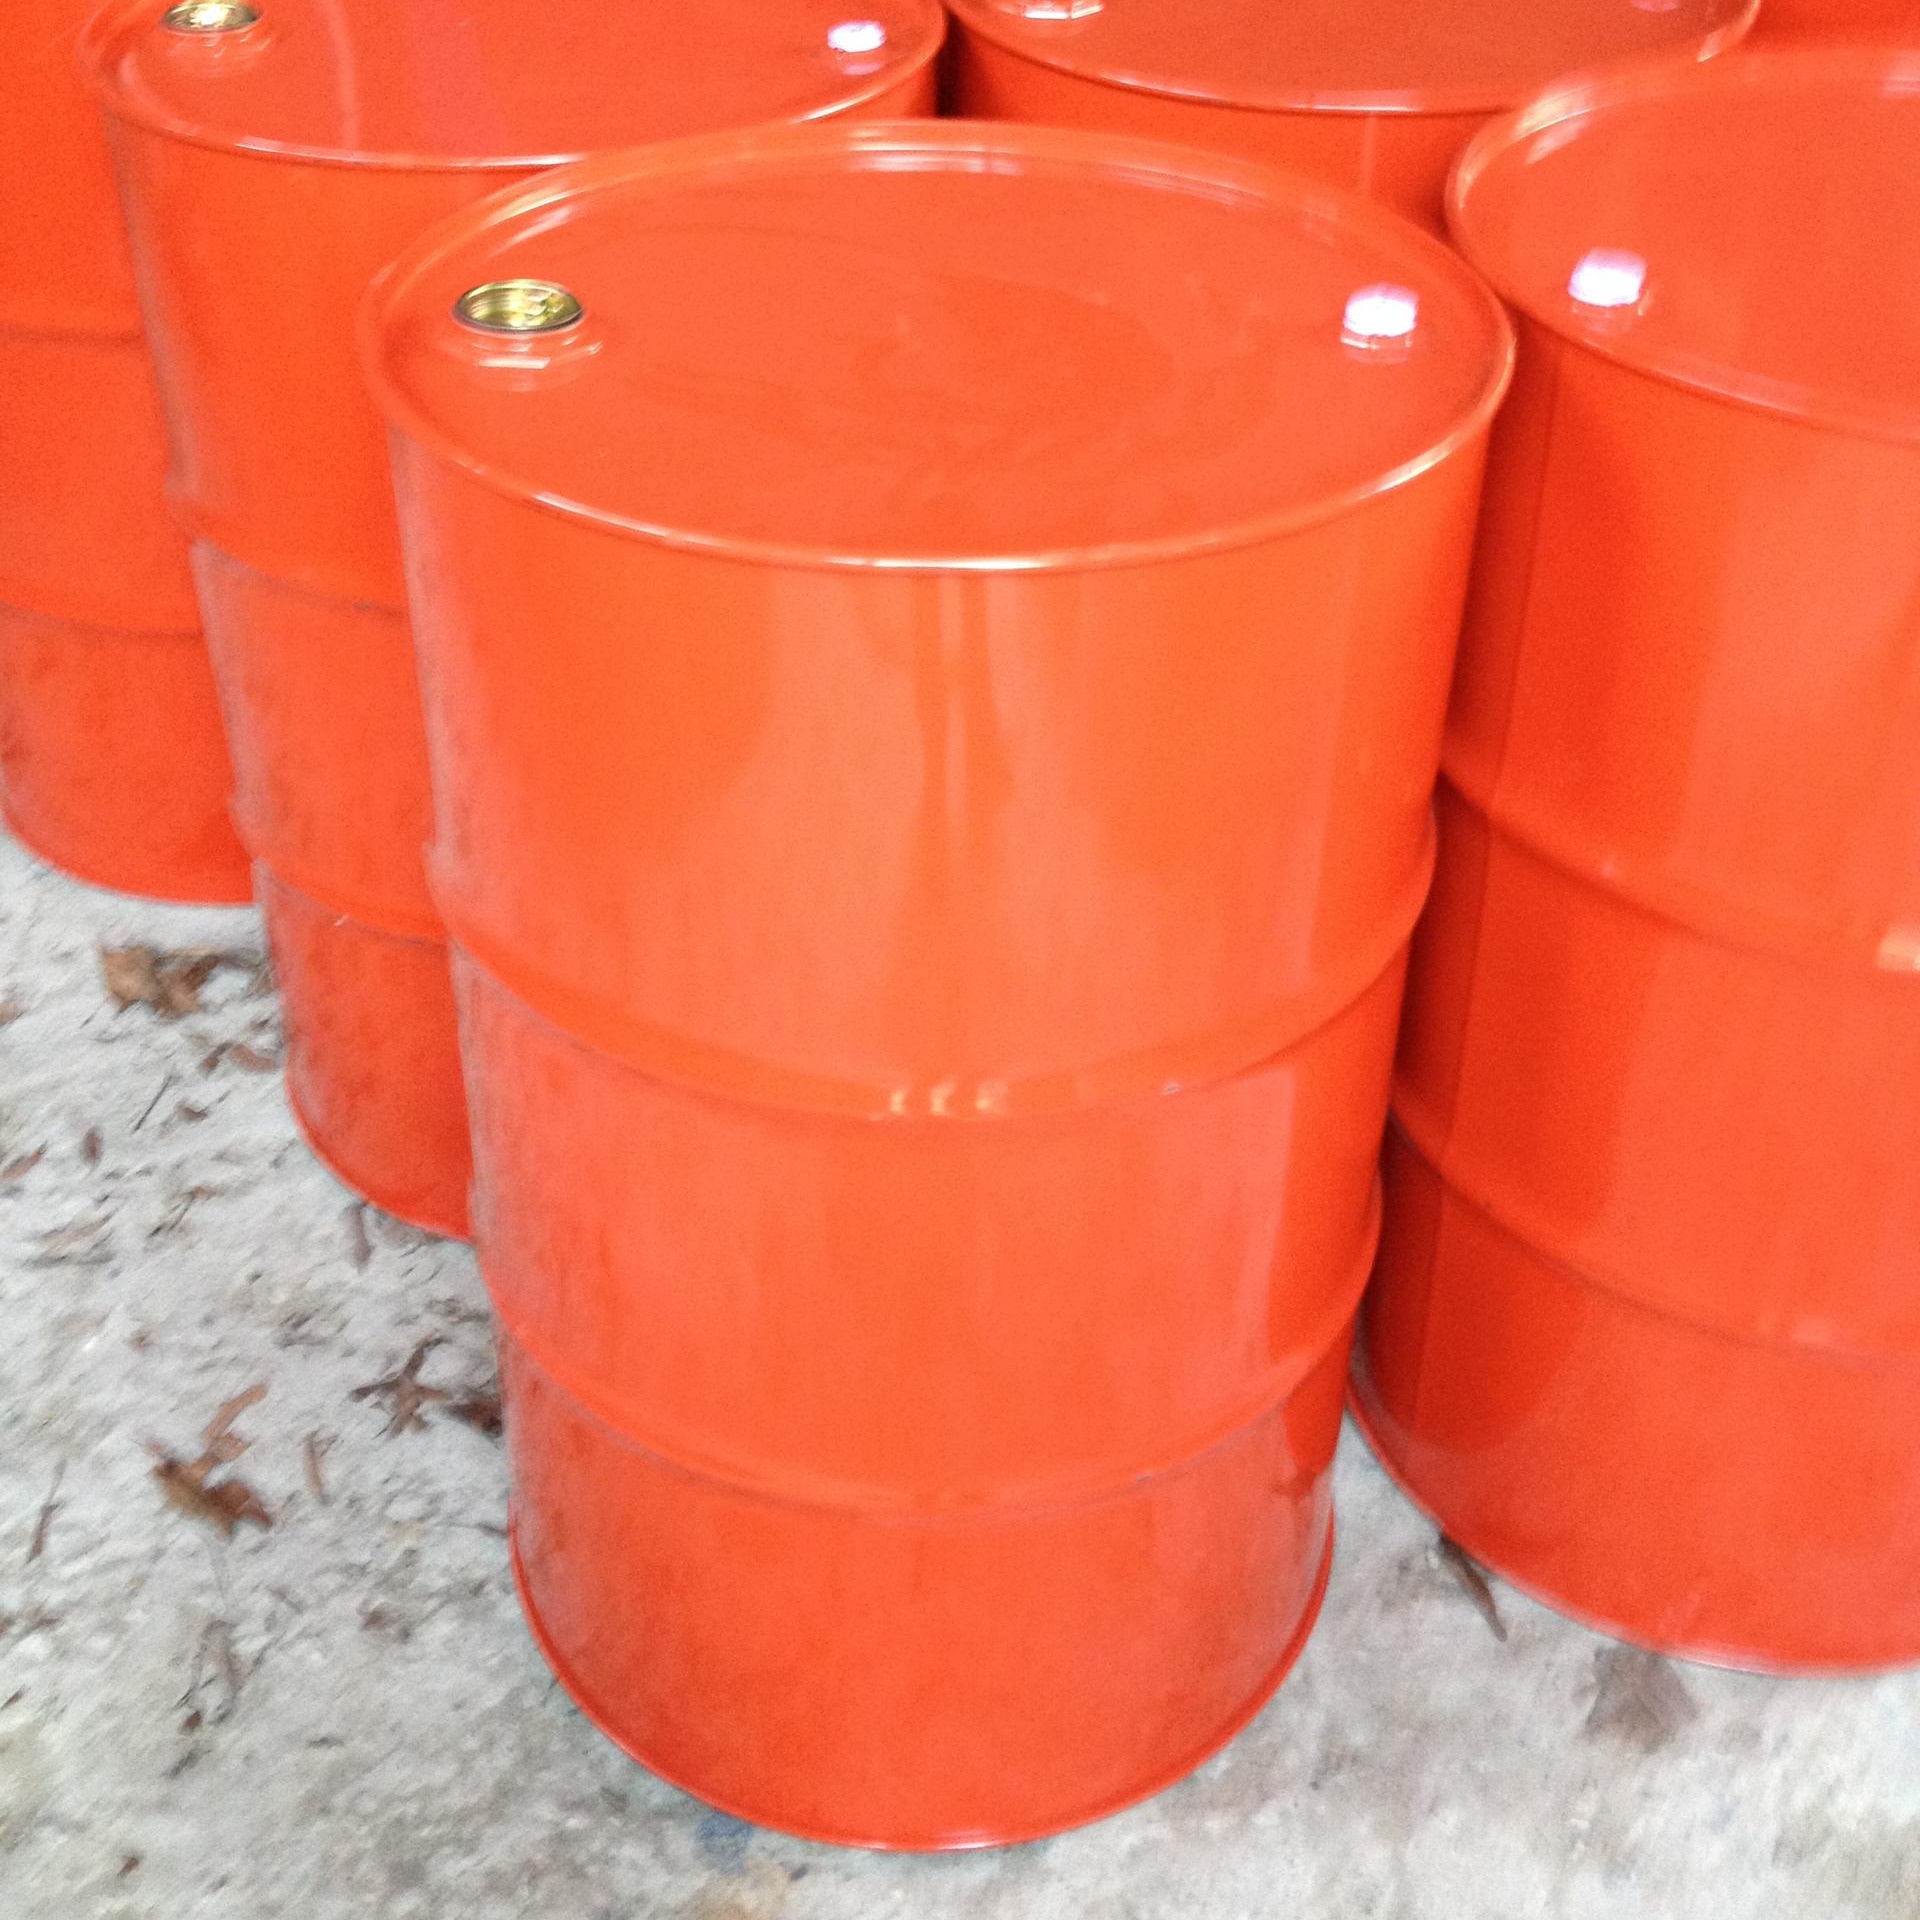 200升铁桶价格 莞兴二手200升铁油桶价格 200L油桶价格、210L铁桶、220L油桶